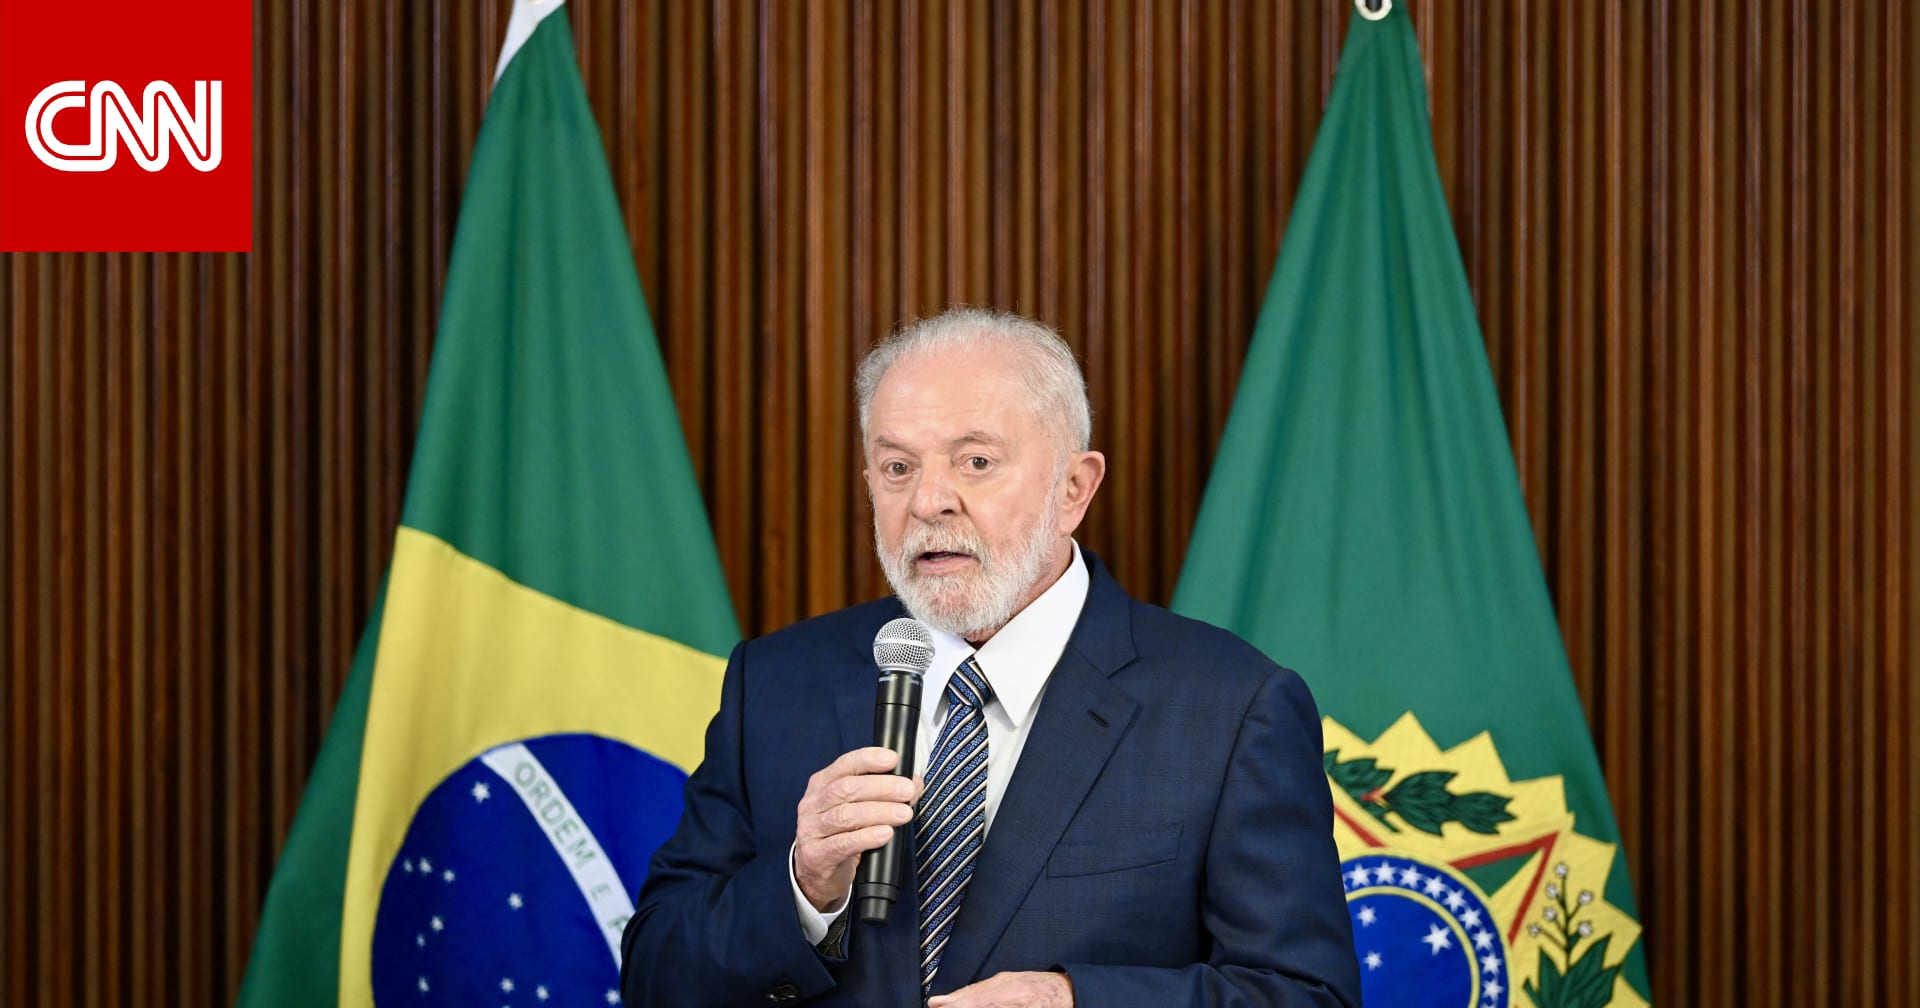 تصاعد الأزمة بين البرازيل وإسرائيل جراء تصريحات لولا دي سيلفا عن "الهولوكوست"